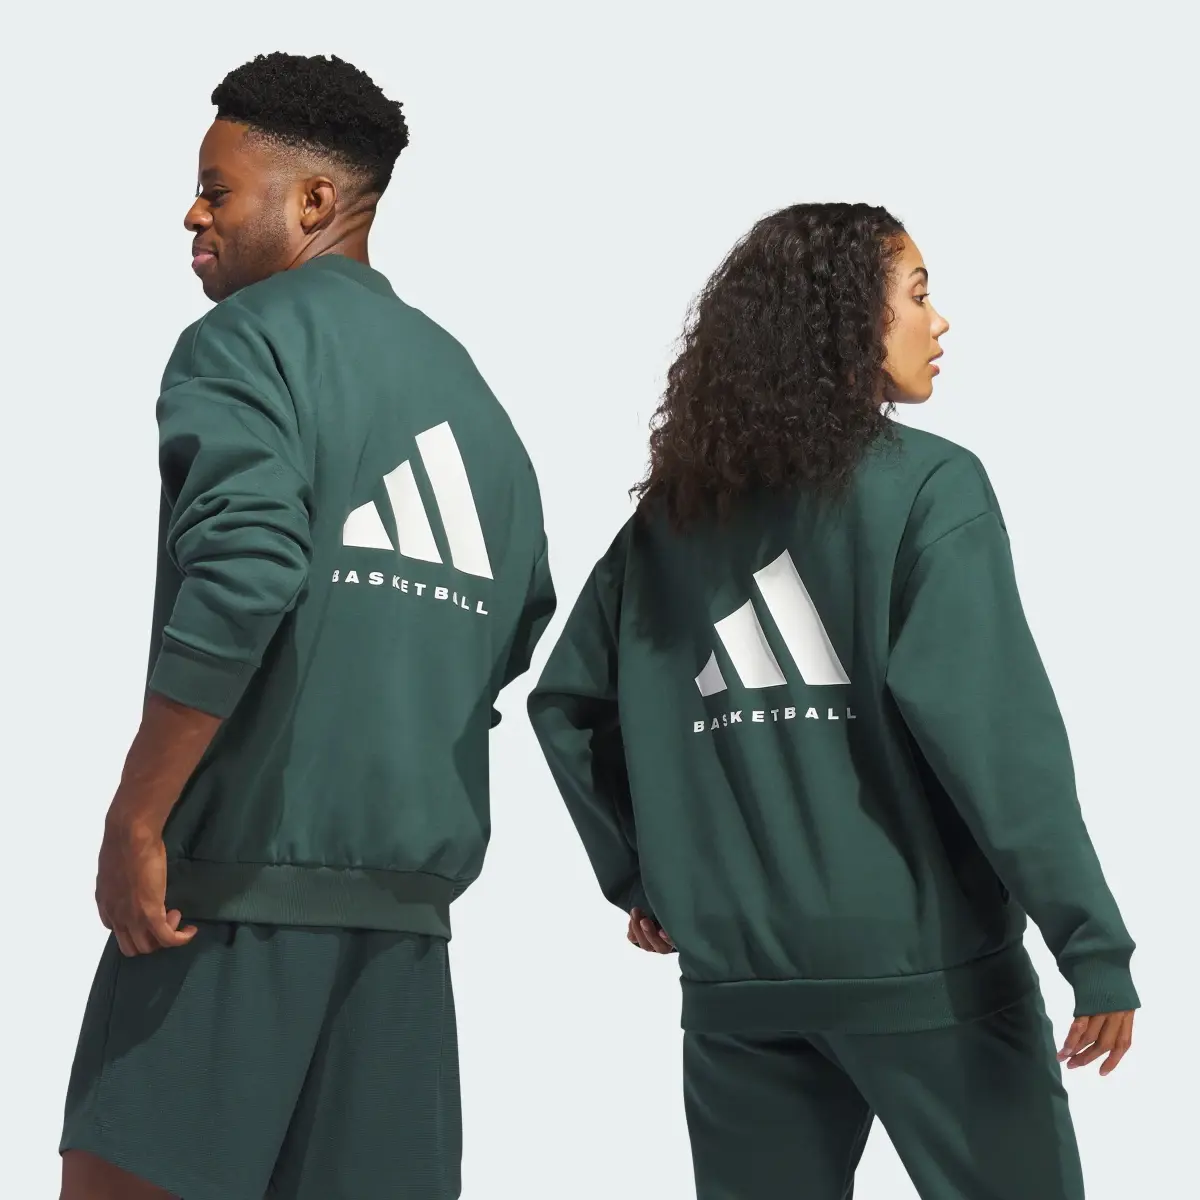 Adidas Basketball Crew Sweatshirt. 2